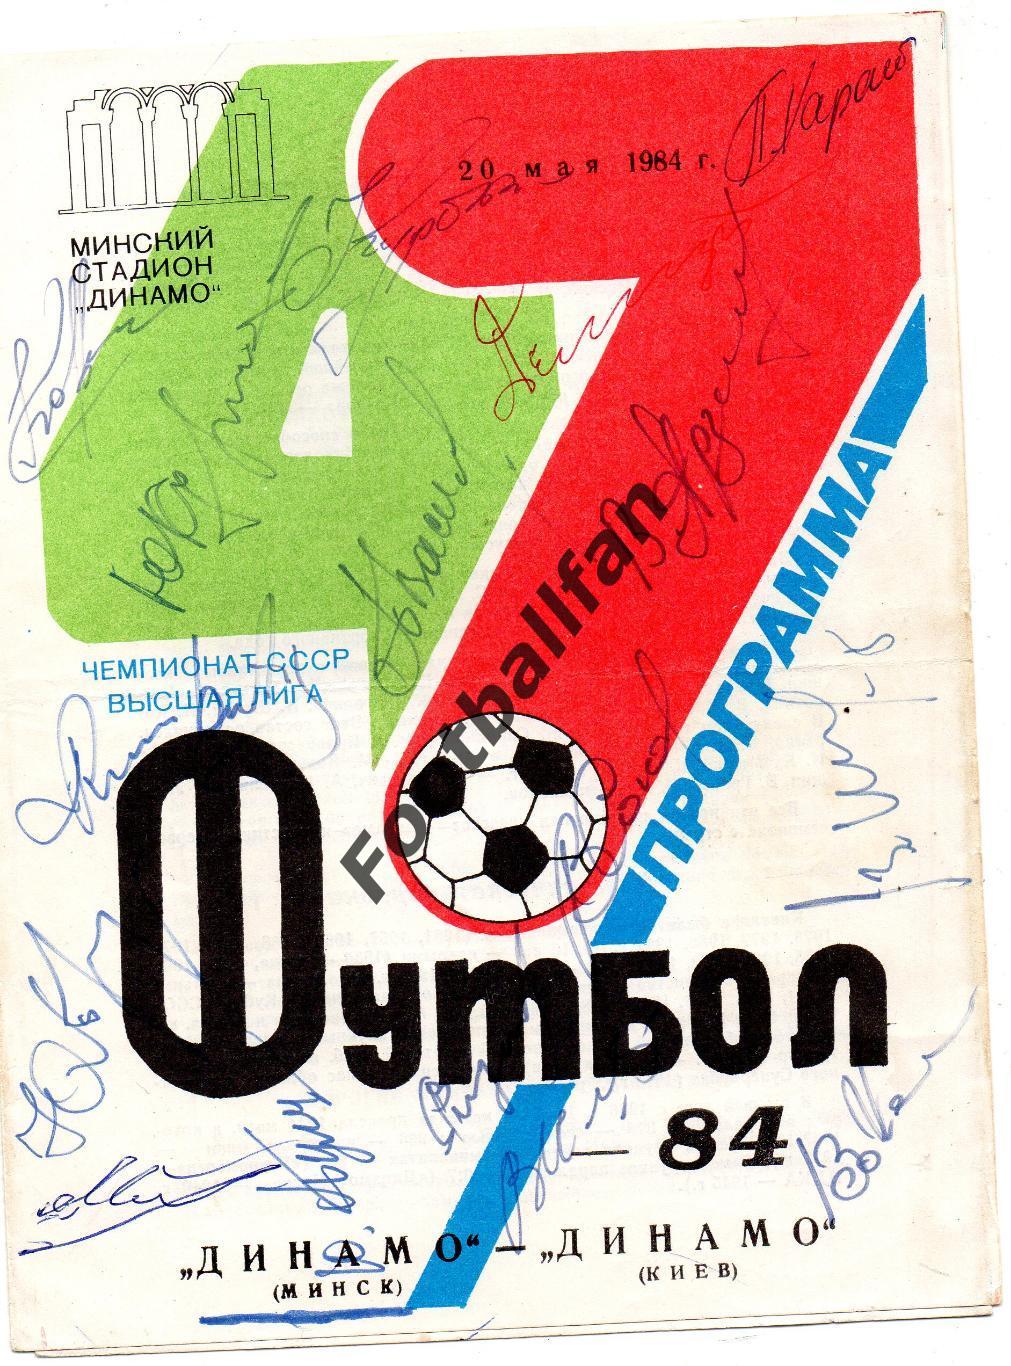 Динамо Минск - Динамо Киев 20.05.1984 автографы минчан